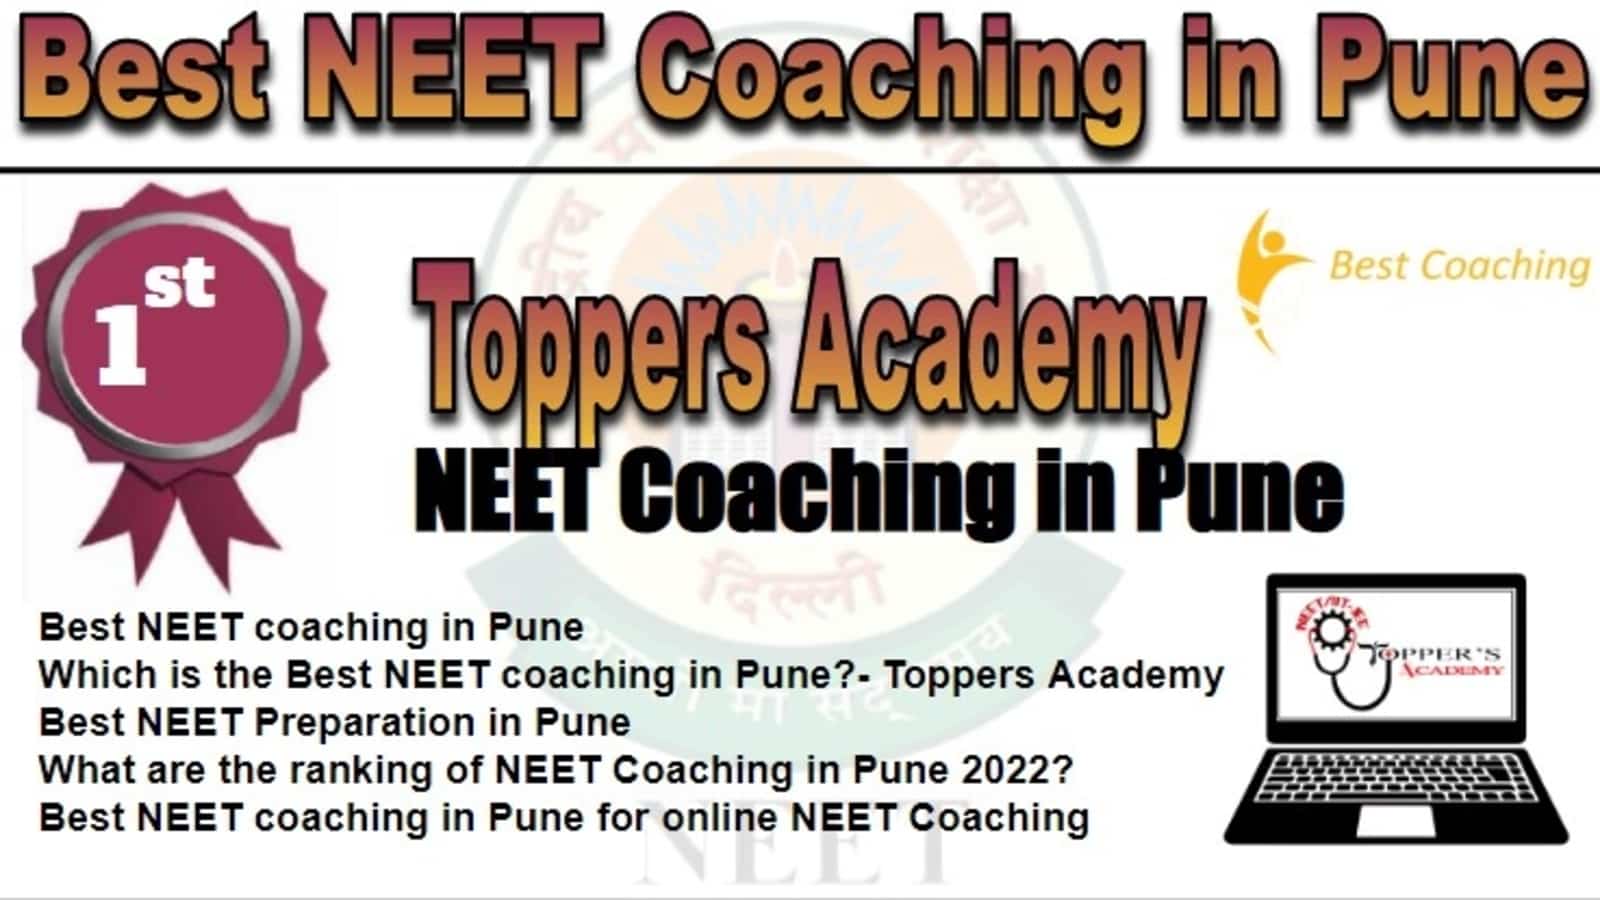 Rank 1 Best NEET Coaching in Pune